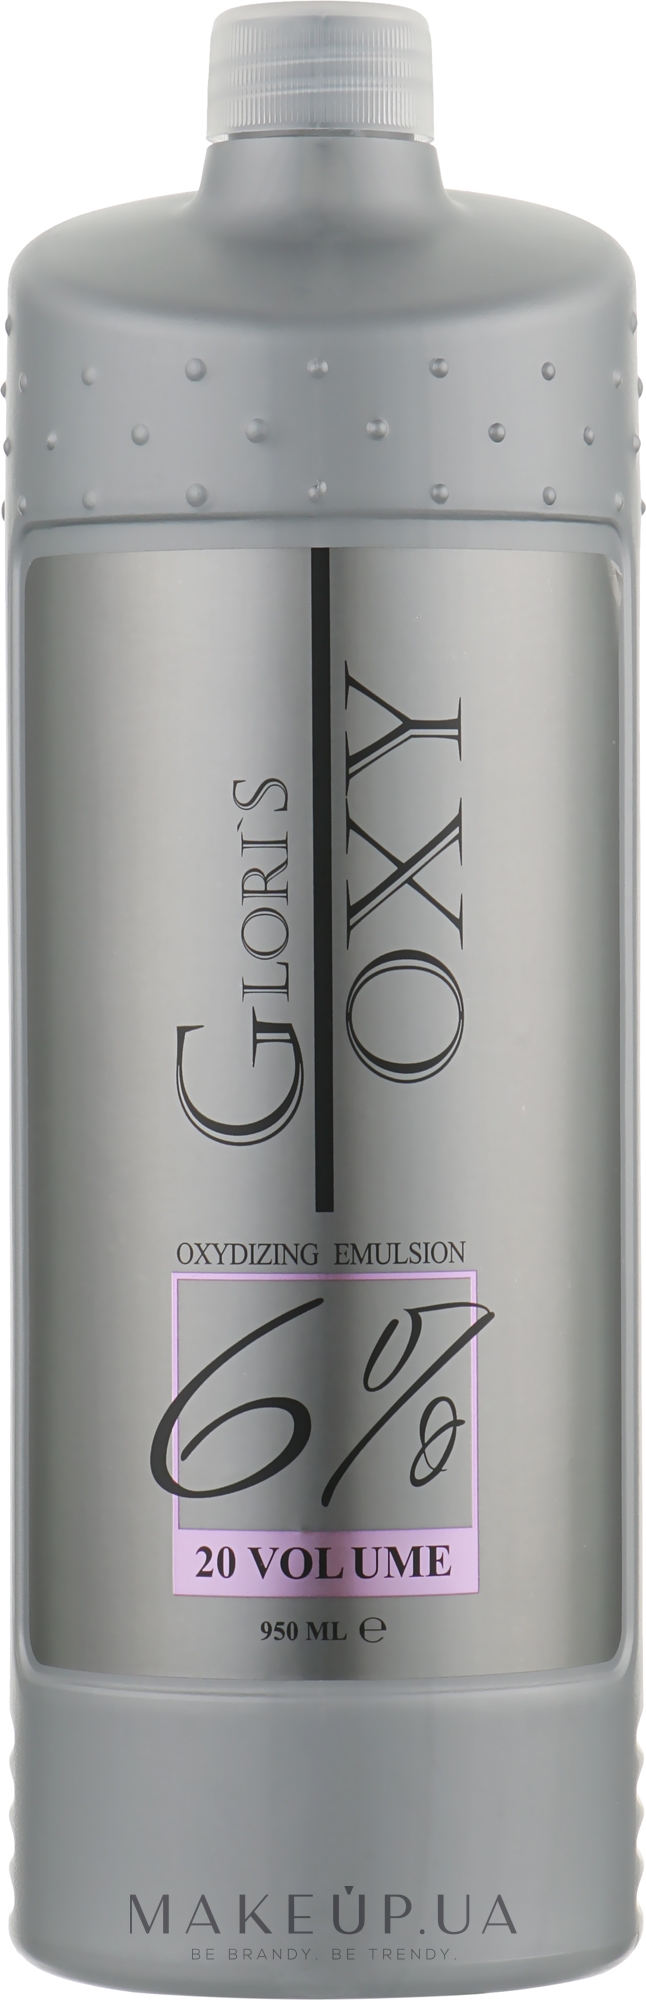 Окислювальна емульсія 6% - Glori's Oxy Oxidizing Emulsion 20 Volume 6 % — фото 950ml